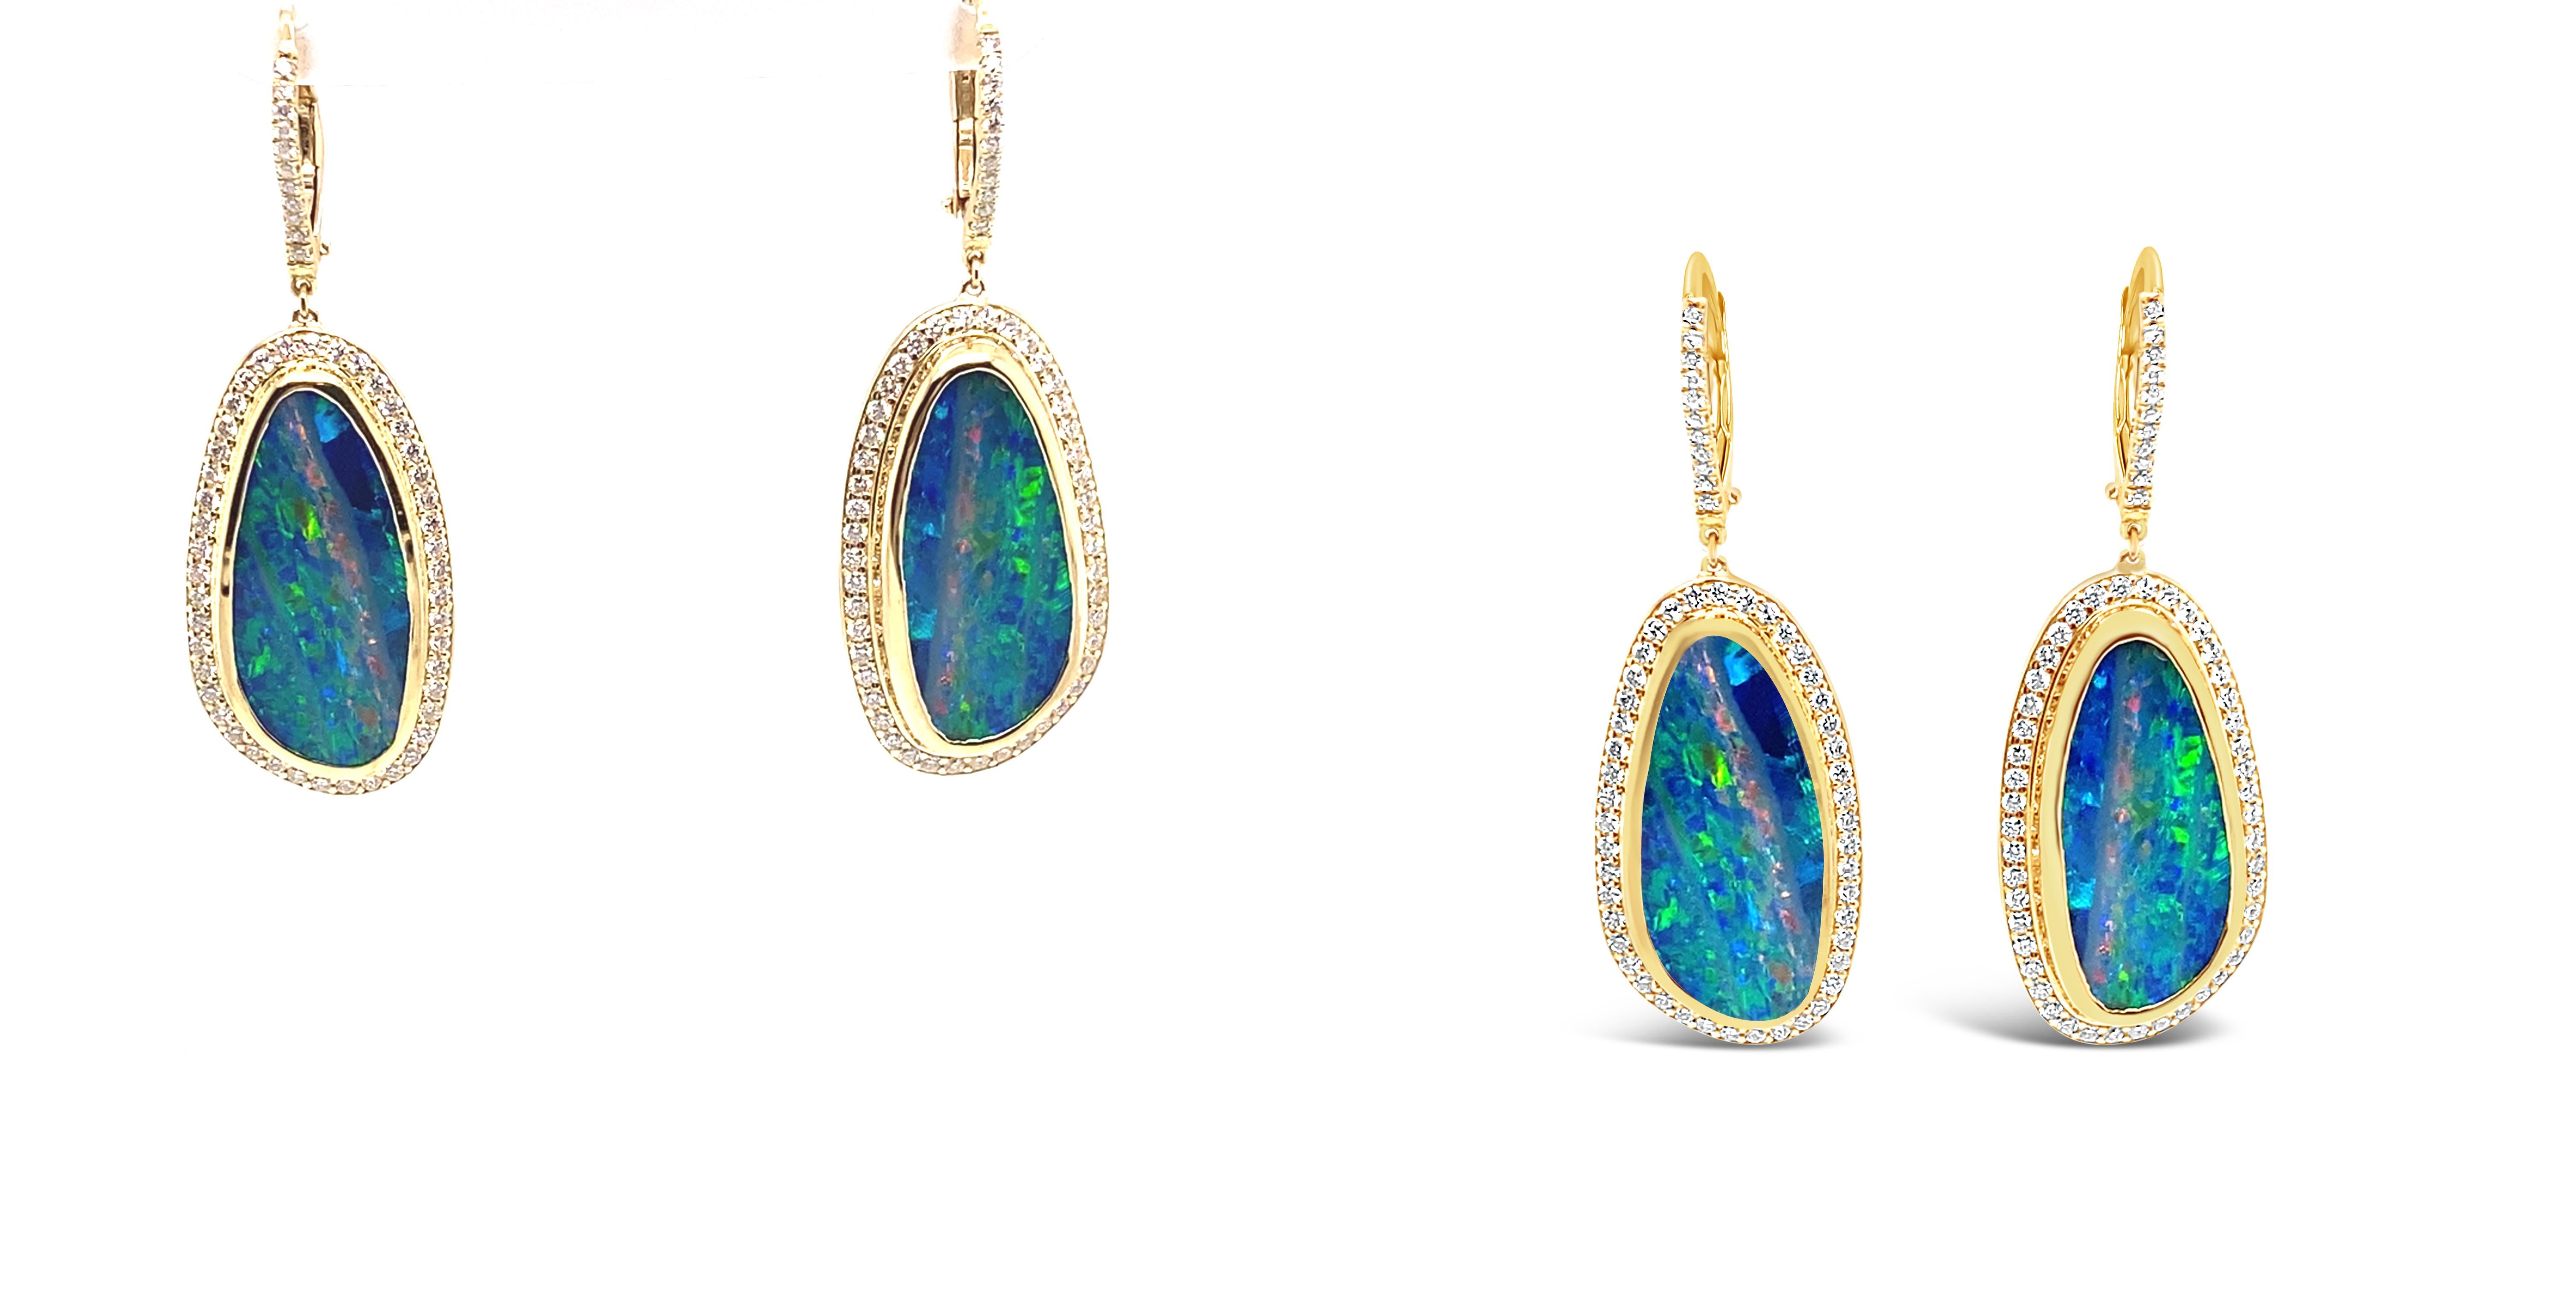 Superbes boucles d'oreilles en or jaune 18 carats et diamants en forme d'opale australienne.

Paire d'opales de Boulder sélectionnées à la main, riches en couleurs, en éclats et en lumière - leurs couleurs vertes et bleues vives jouent à la danse